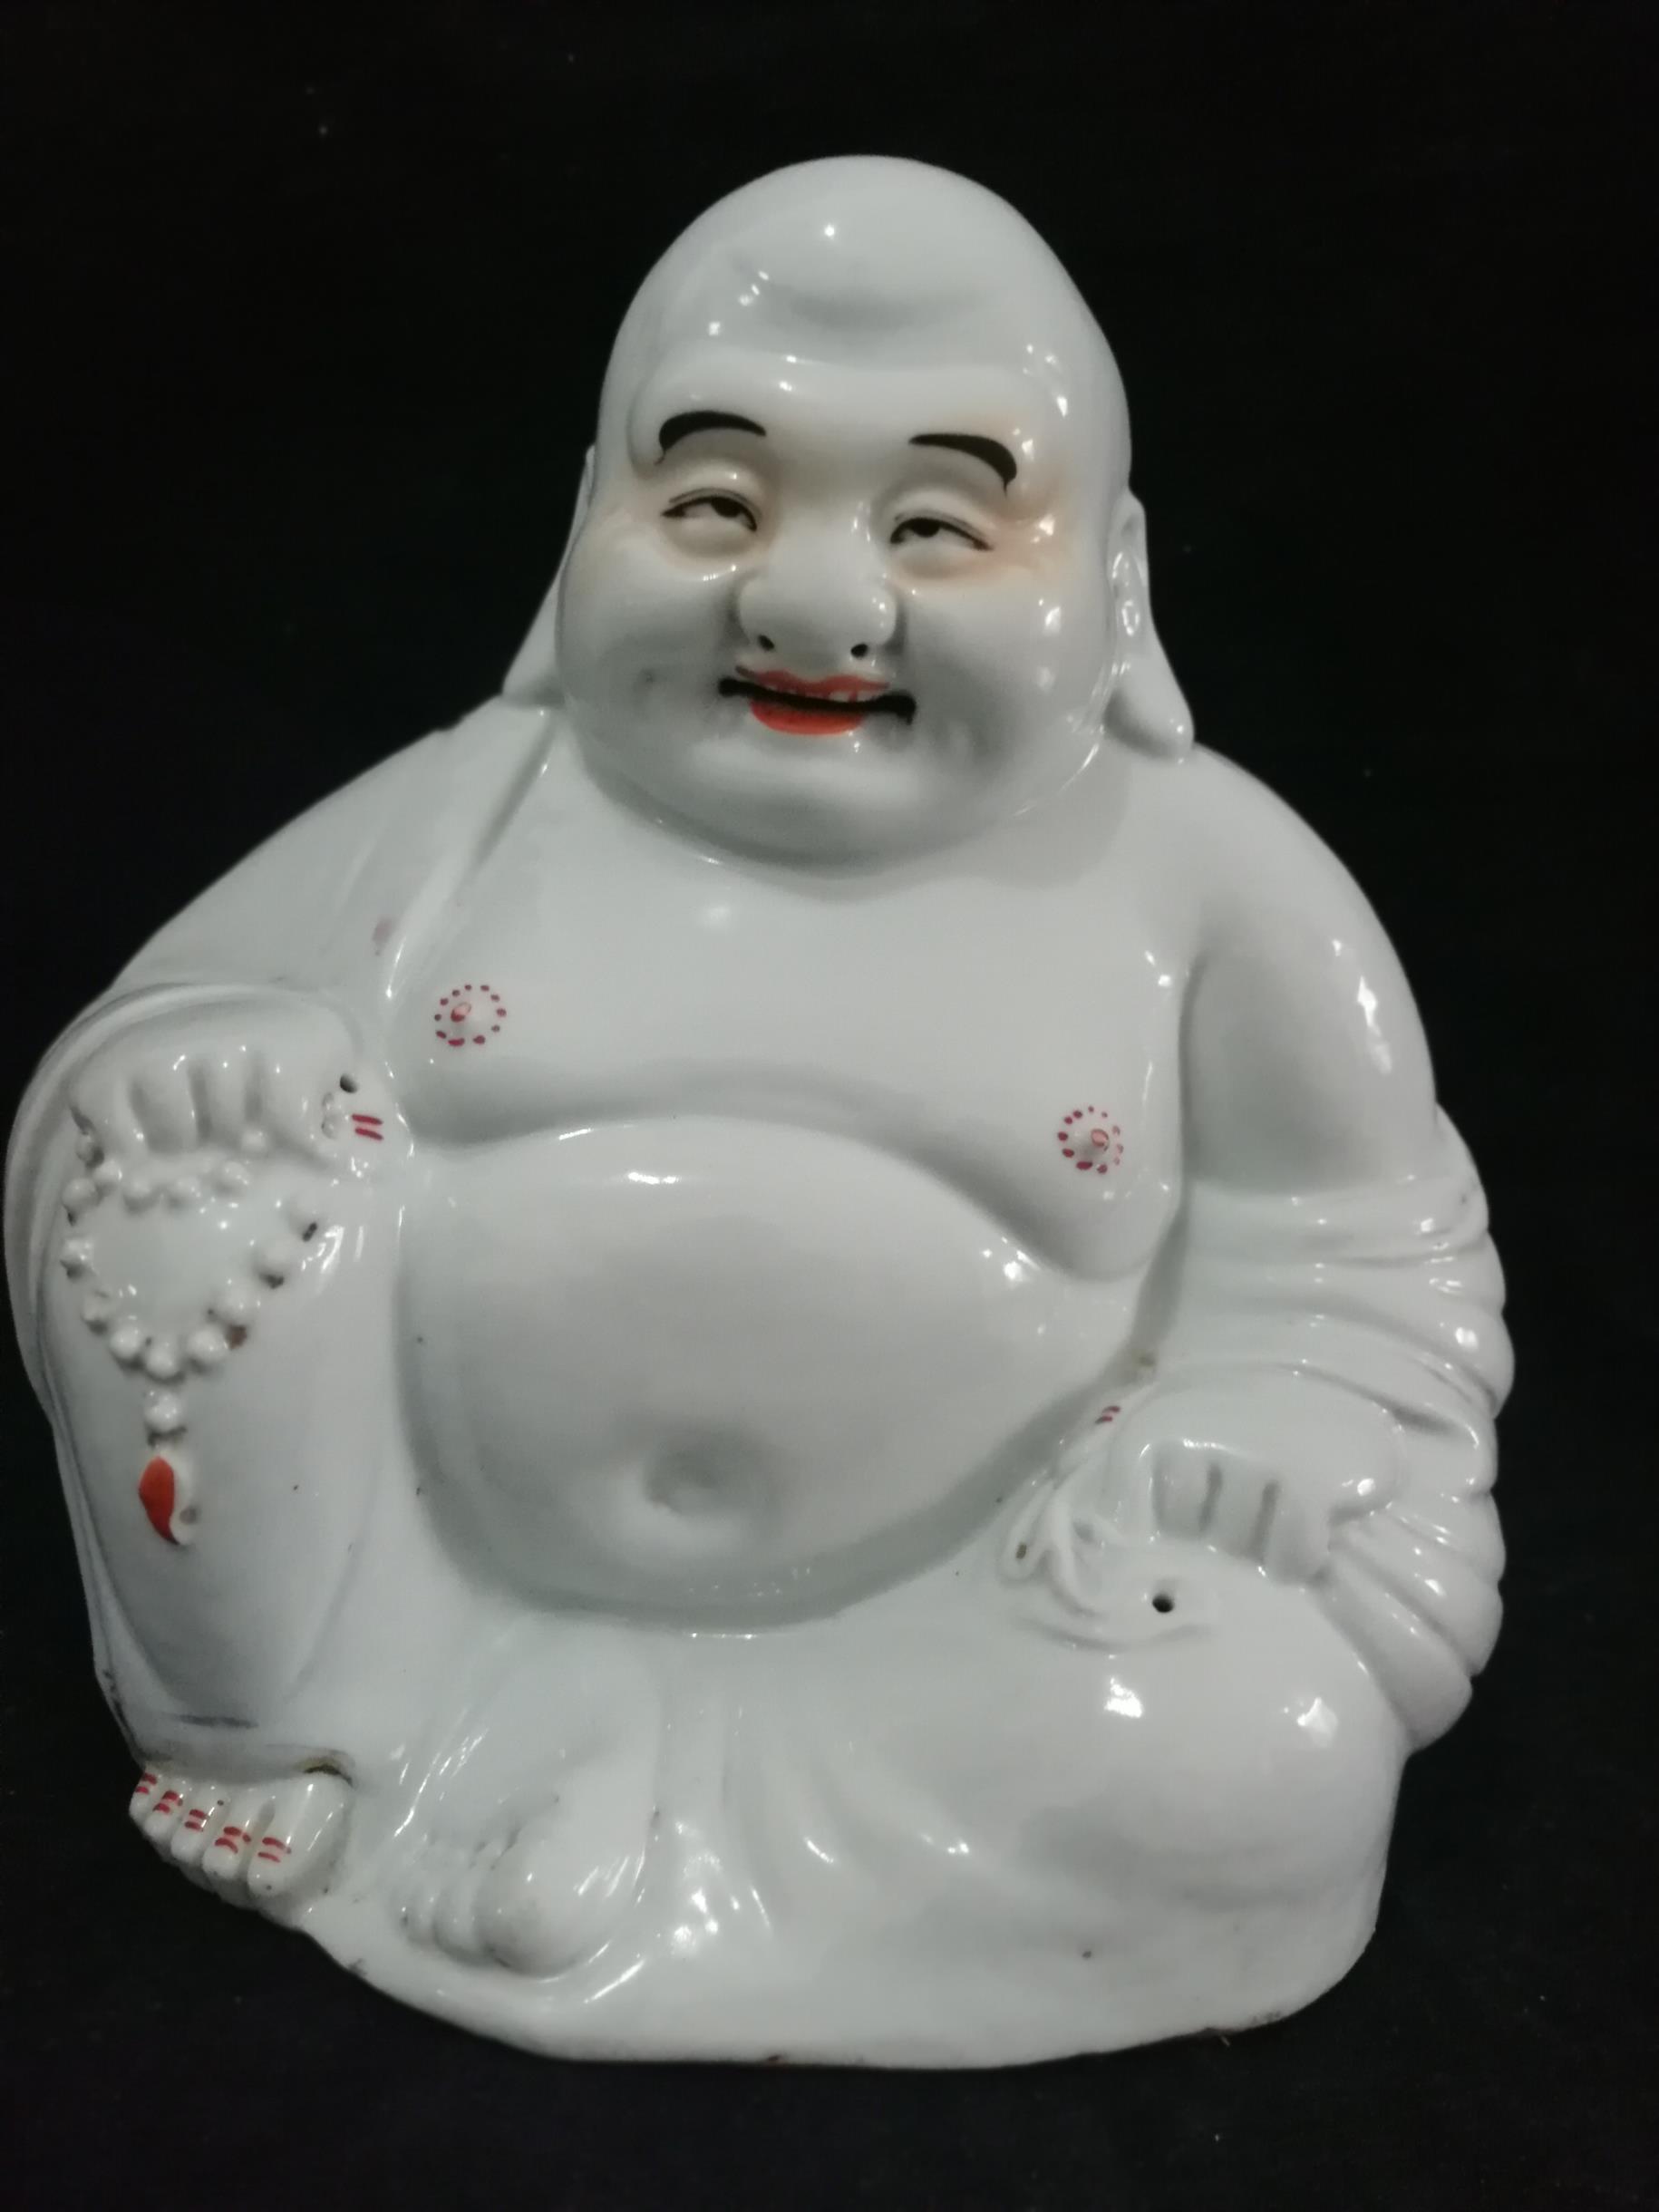 兰州古佛像修复 南京美瓷工艺品有限公司